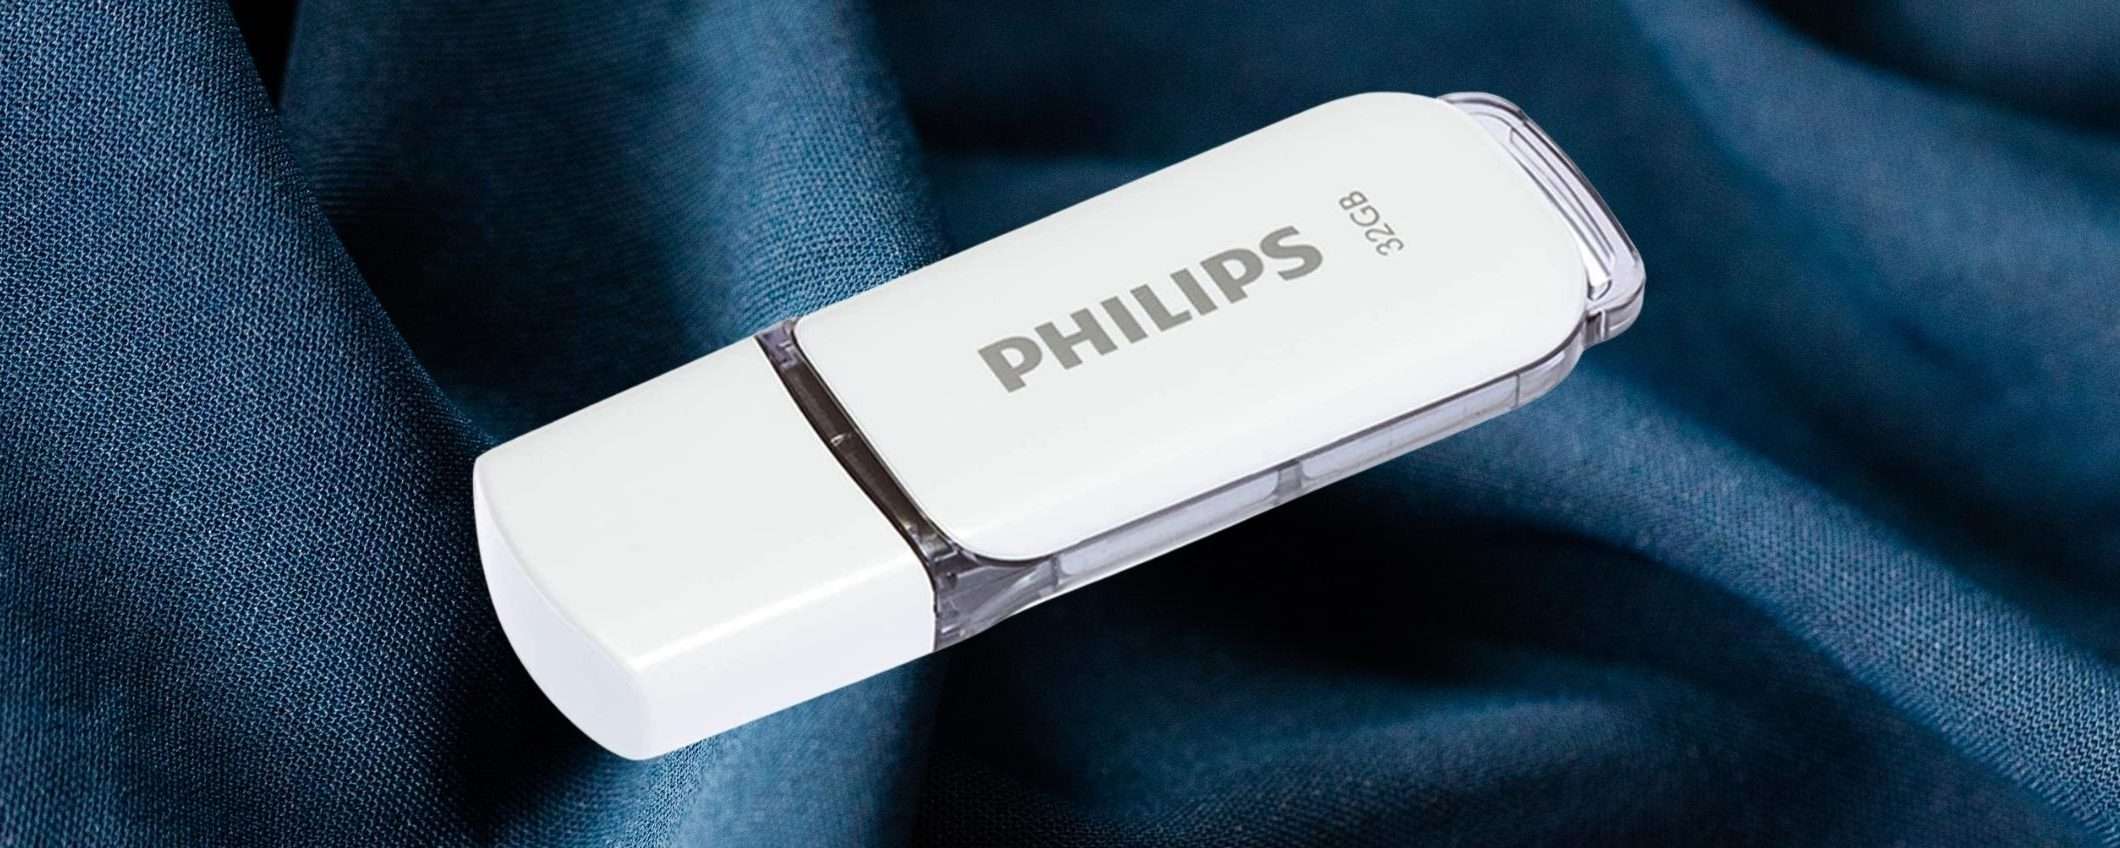 La Pendrive di Philips a 5€ torna disponibile: FAI PRESTO